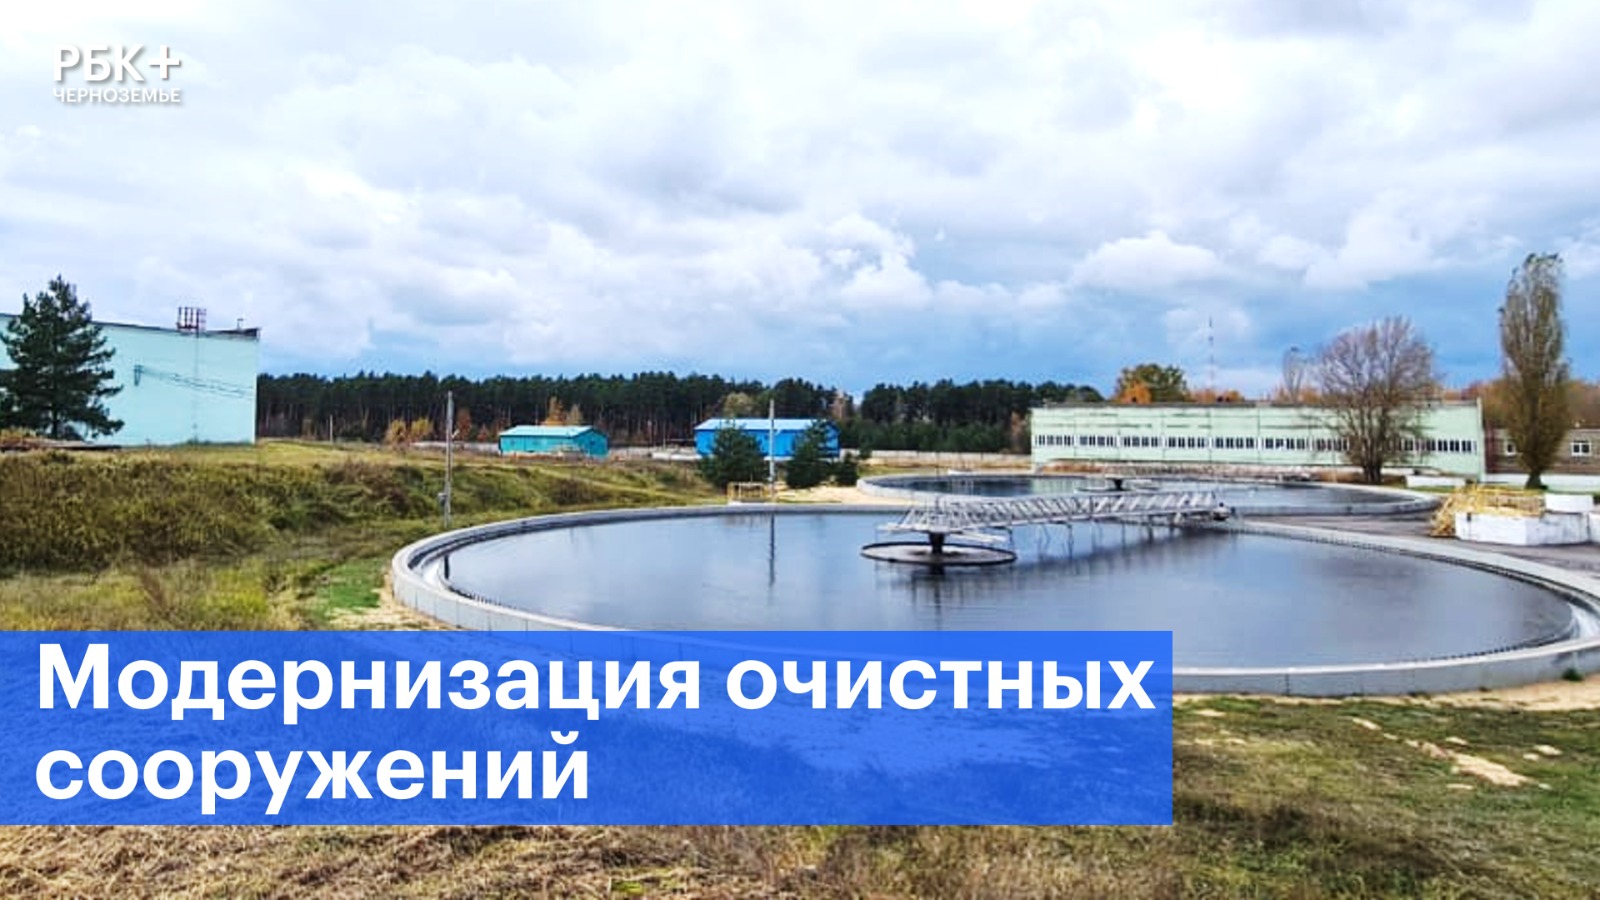 «РВК-Липецк» реализует проект модернизации очистных сооружений